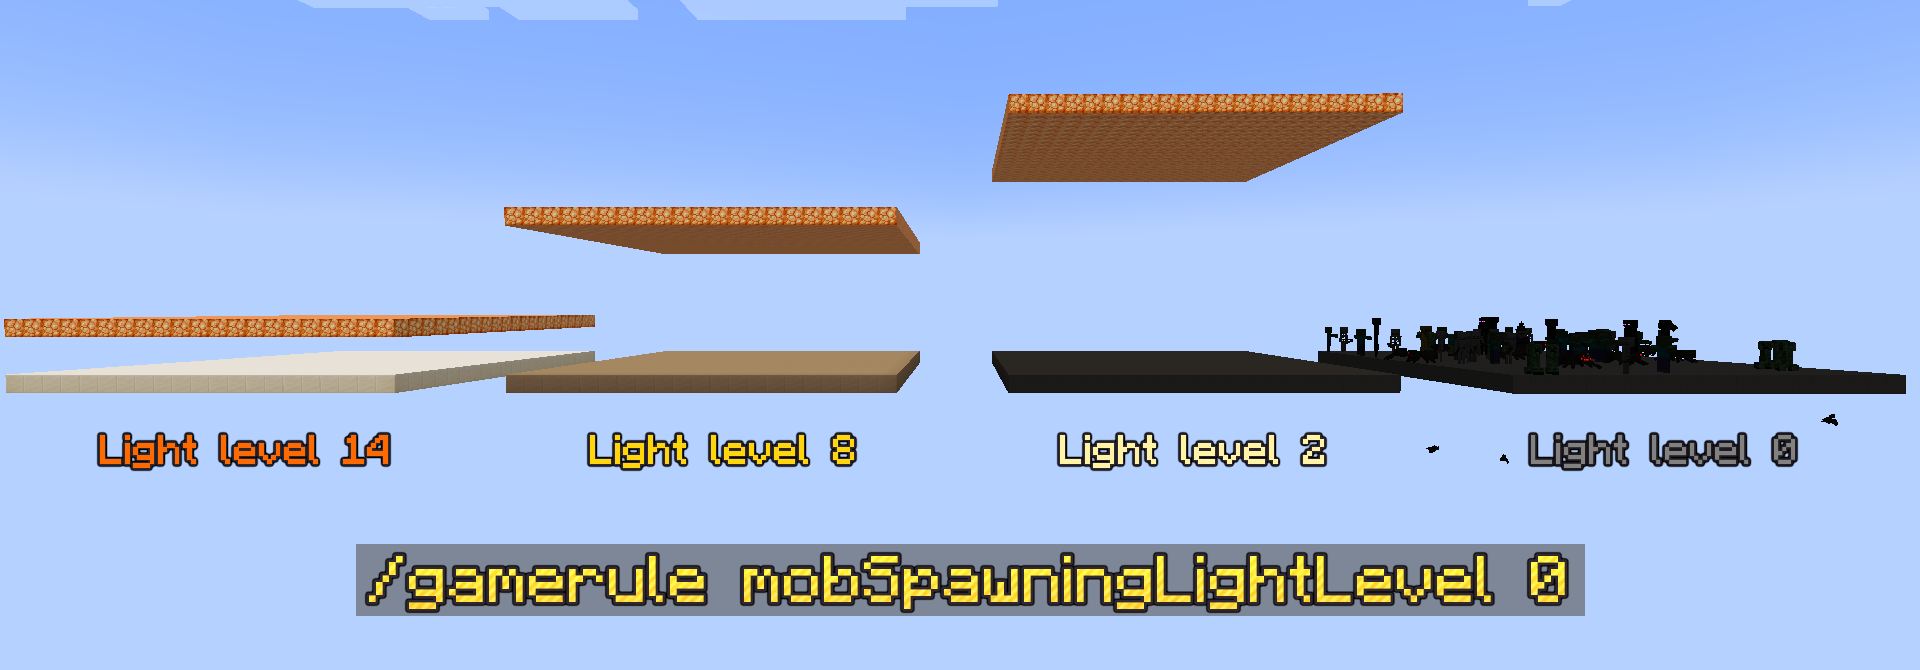 Tomhed Anvendt skyskraber Mob Spawning Light Level - Mods - Minecraft - CurseForge